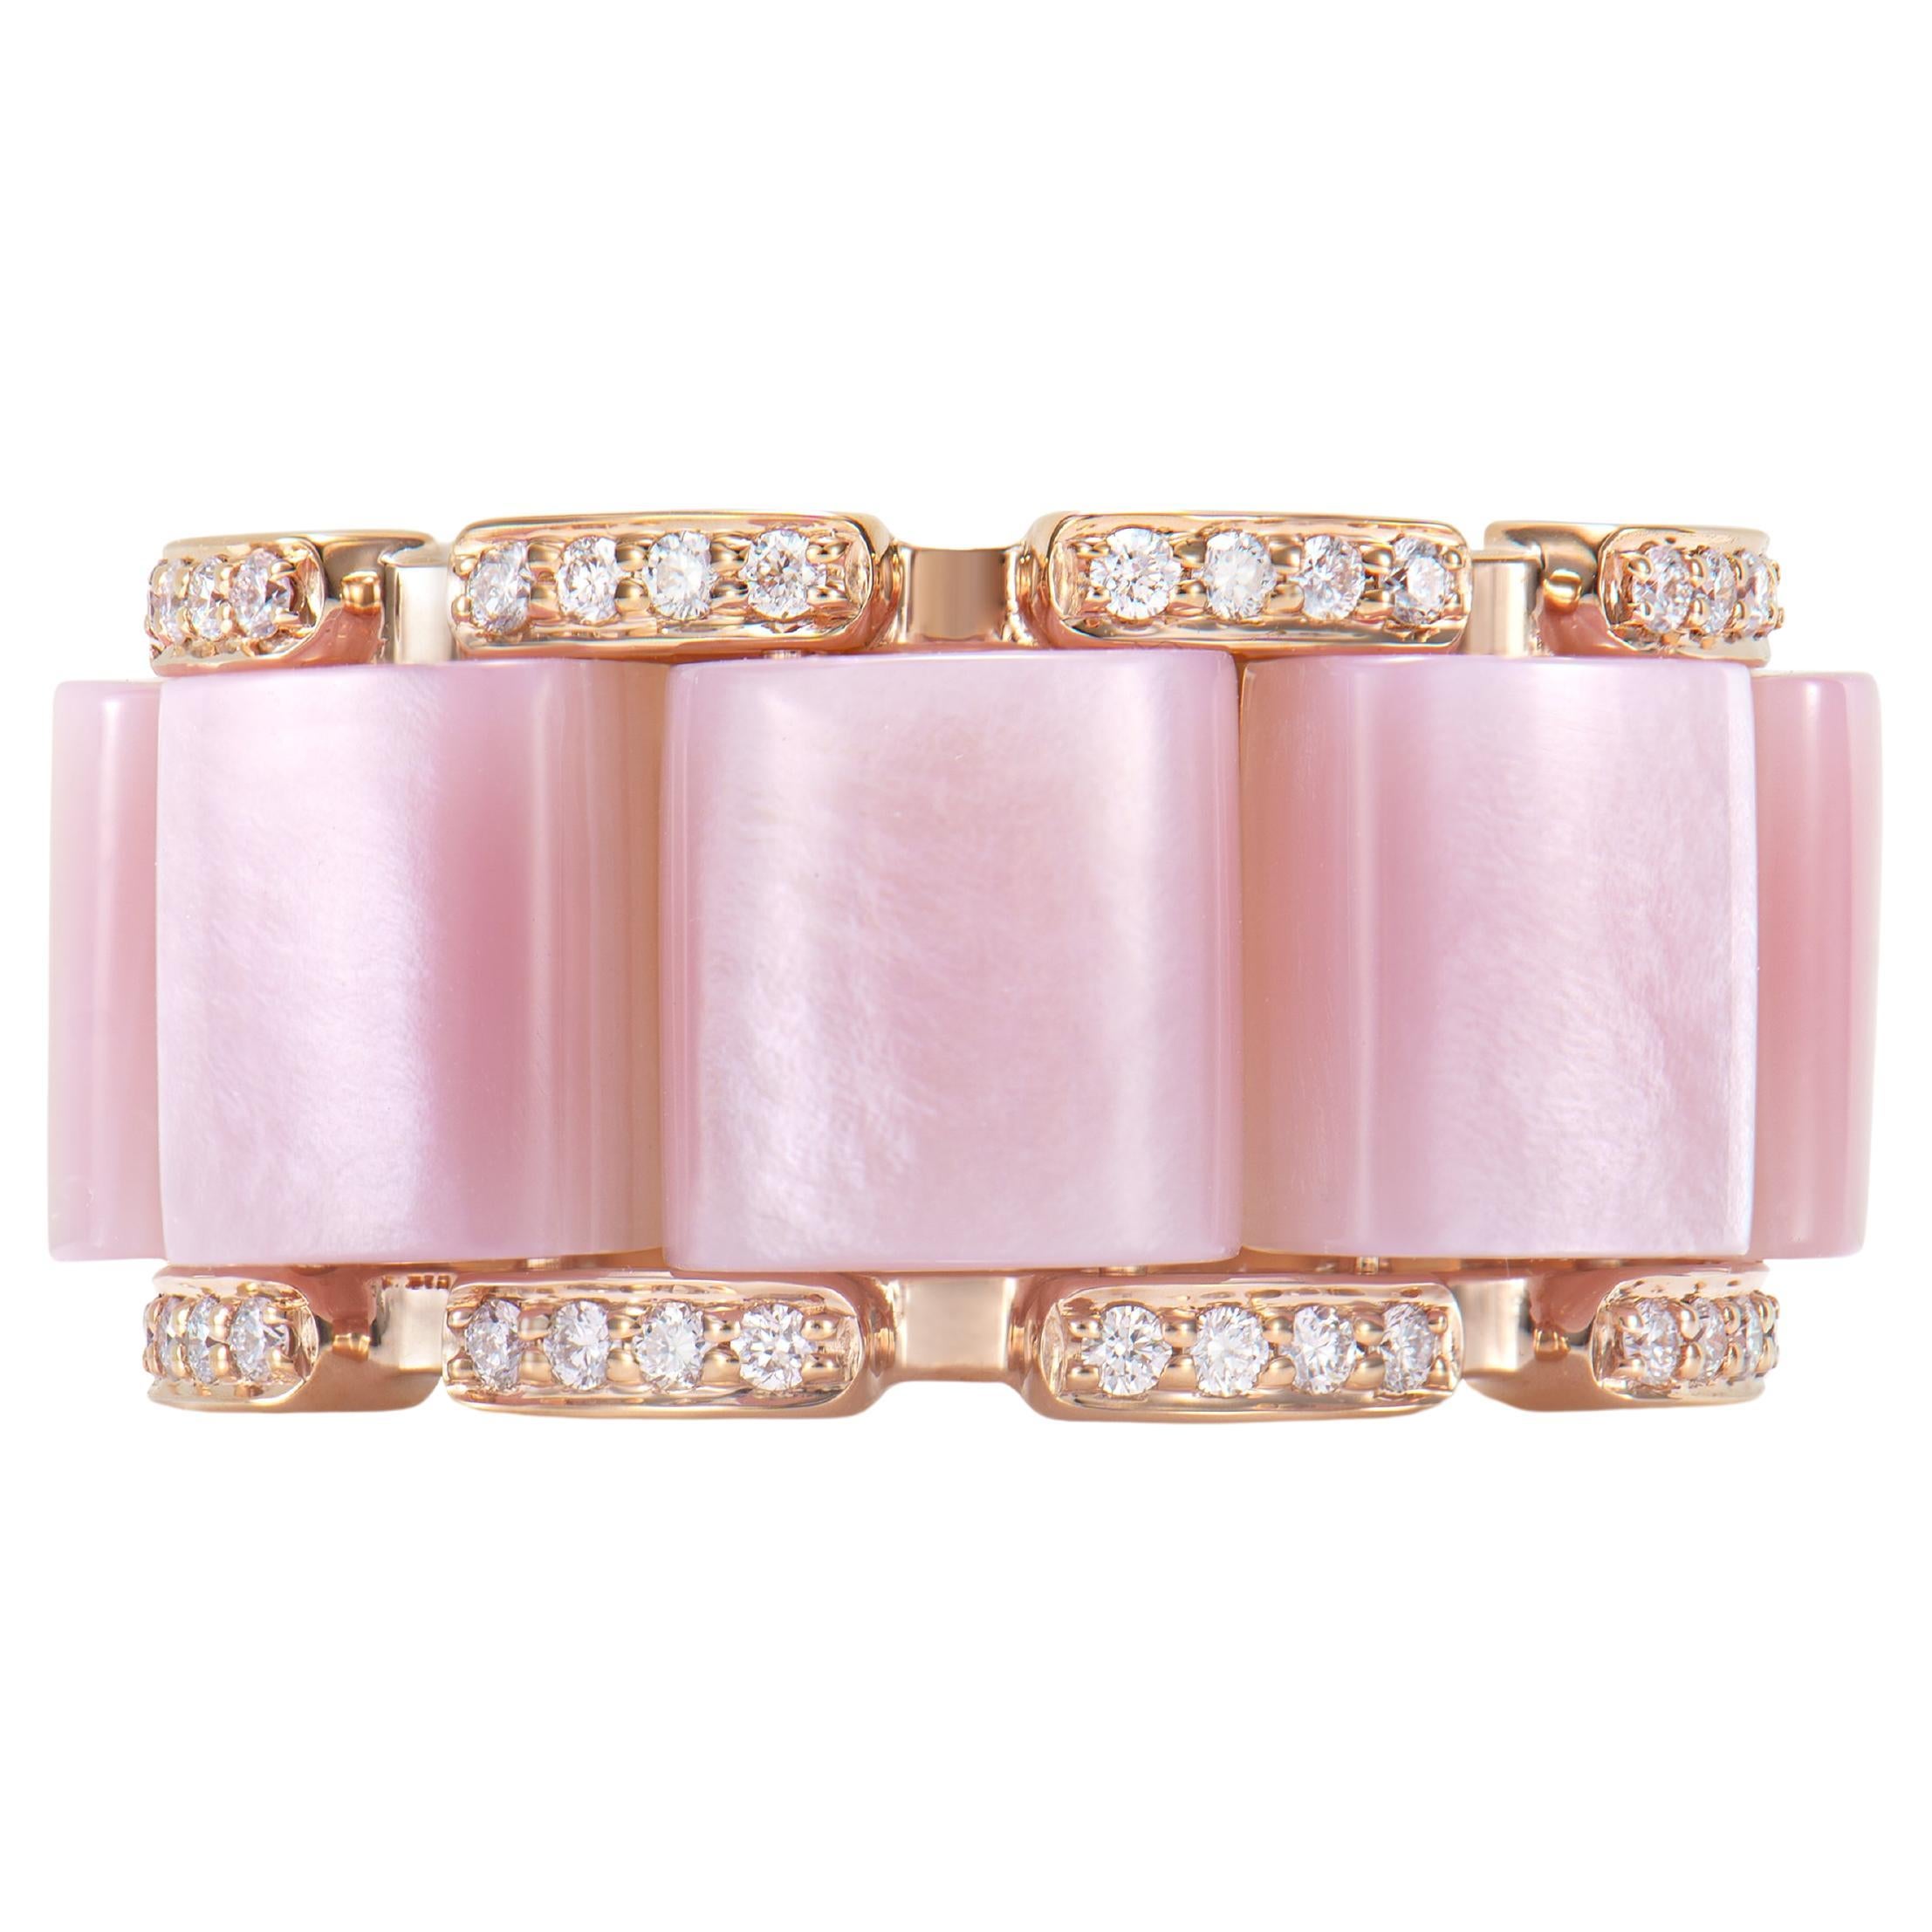 15.53 Carat Pink Opal Fancy Ring in 18Karat Rose Gold with White Diamond.  